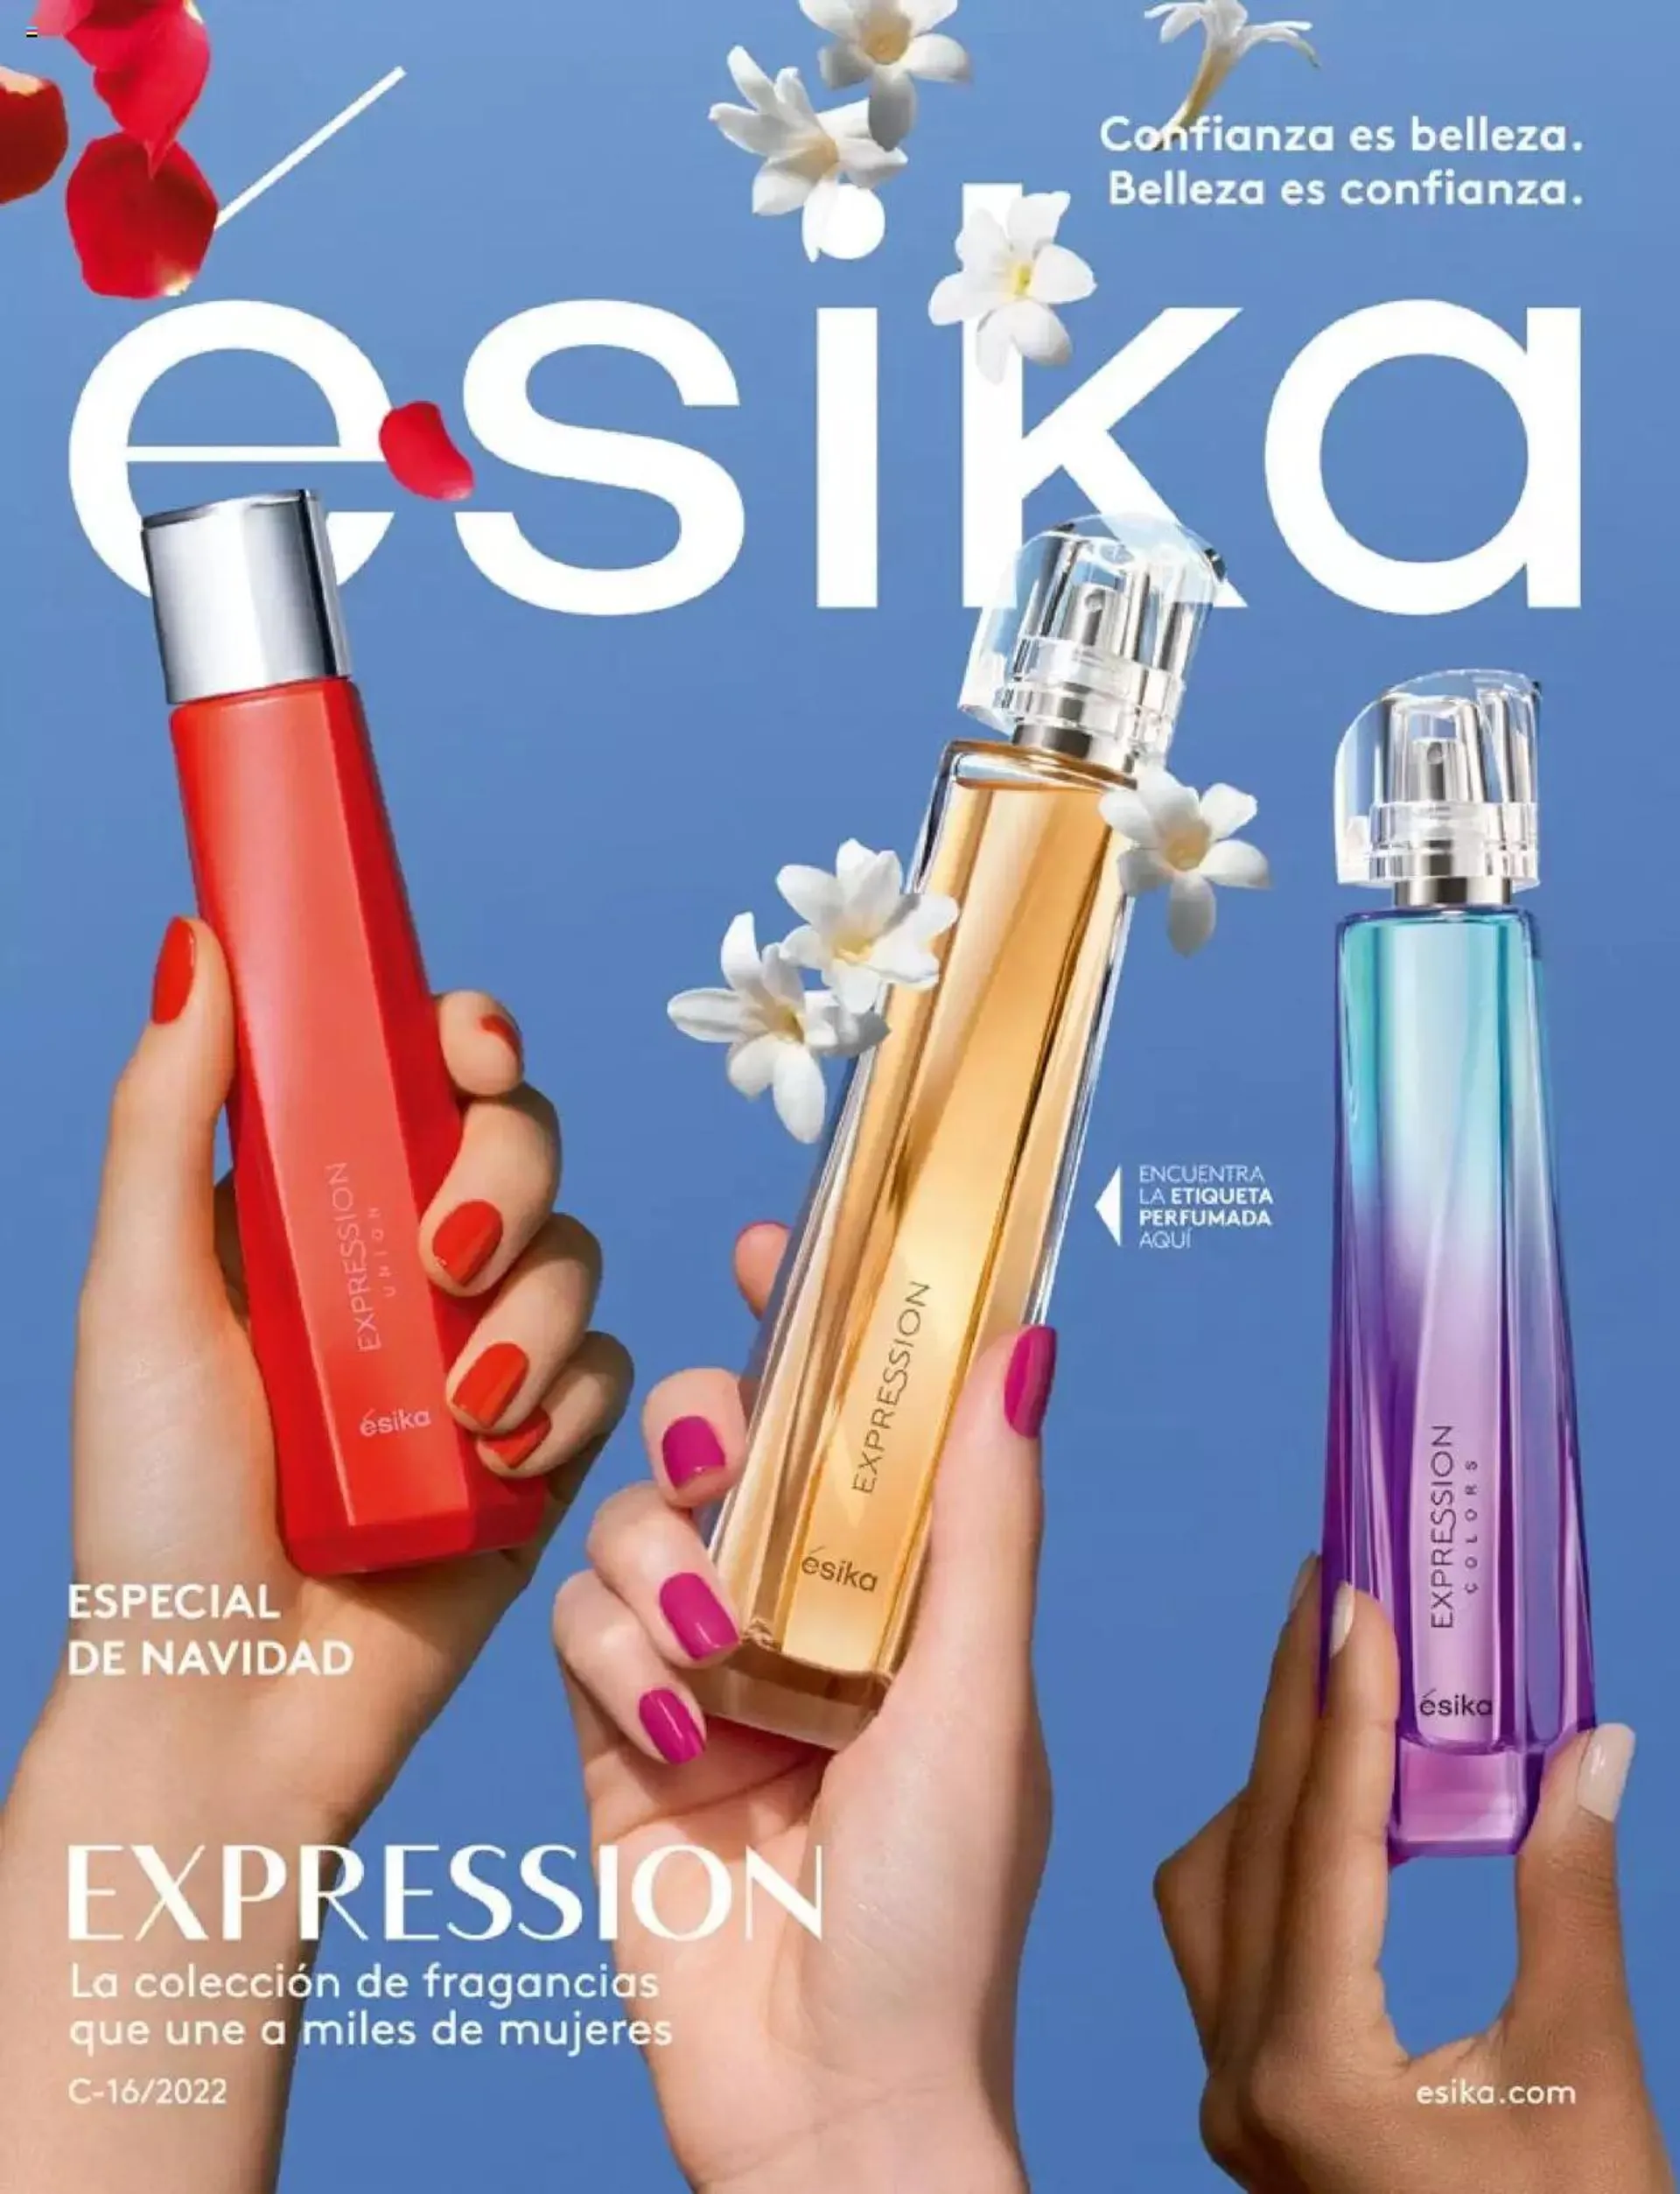 Ésika - C16/ Expression - 0